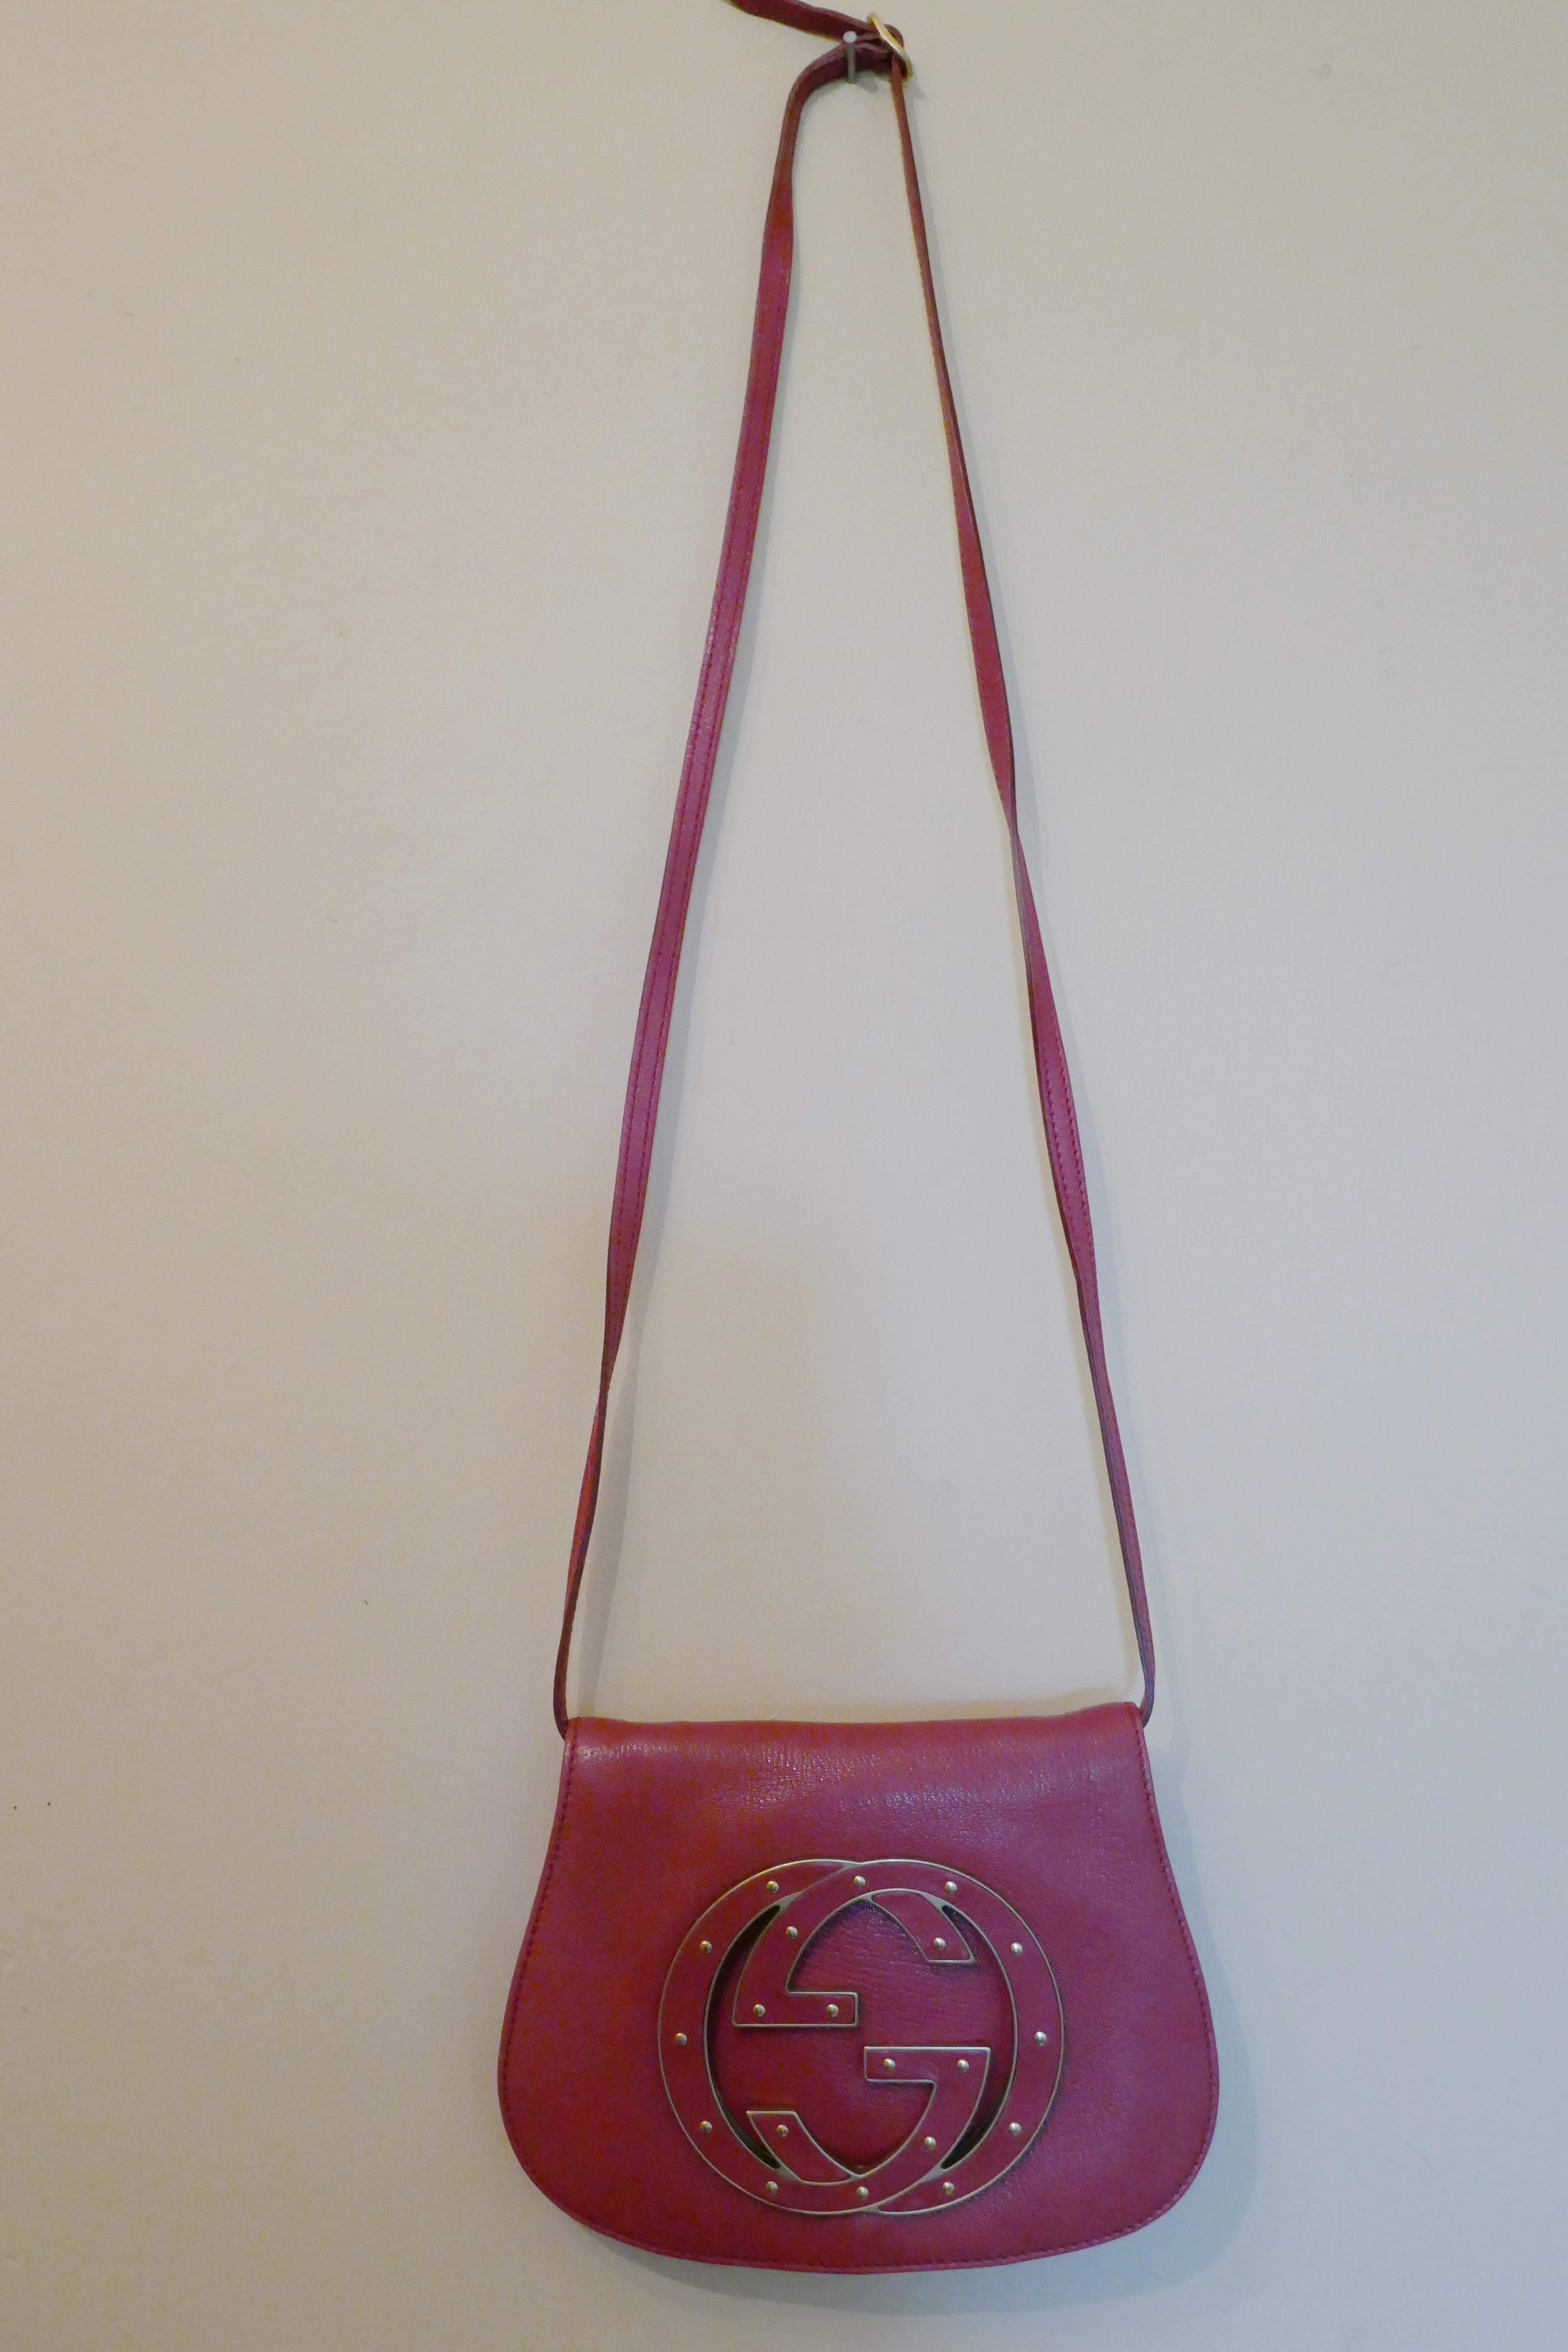 Rare Gucci Soho Pink Leather Messenger Shoulder Bag Purse   For Sale 9